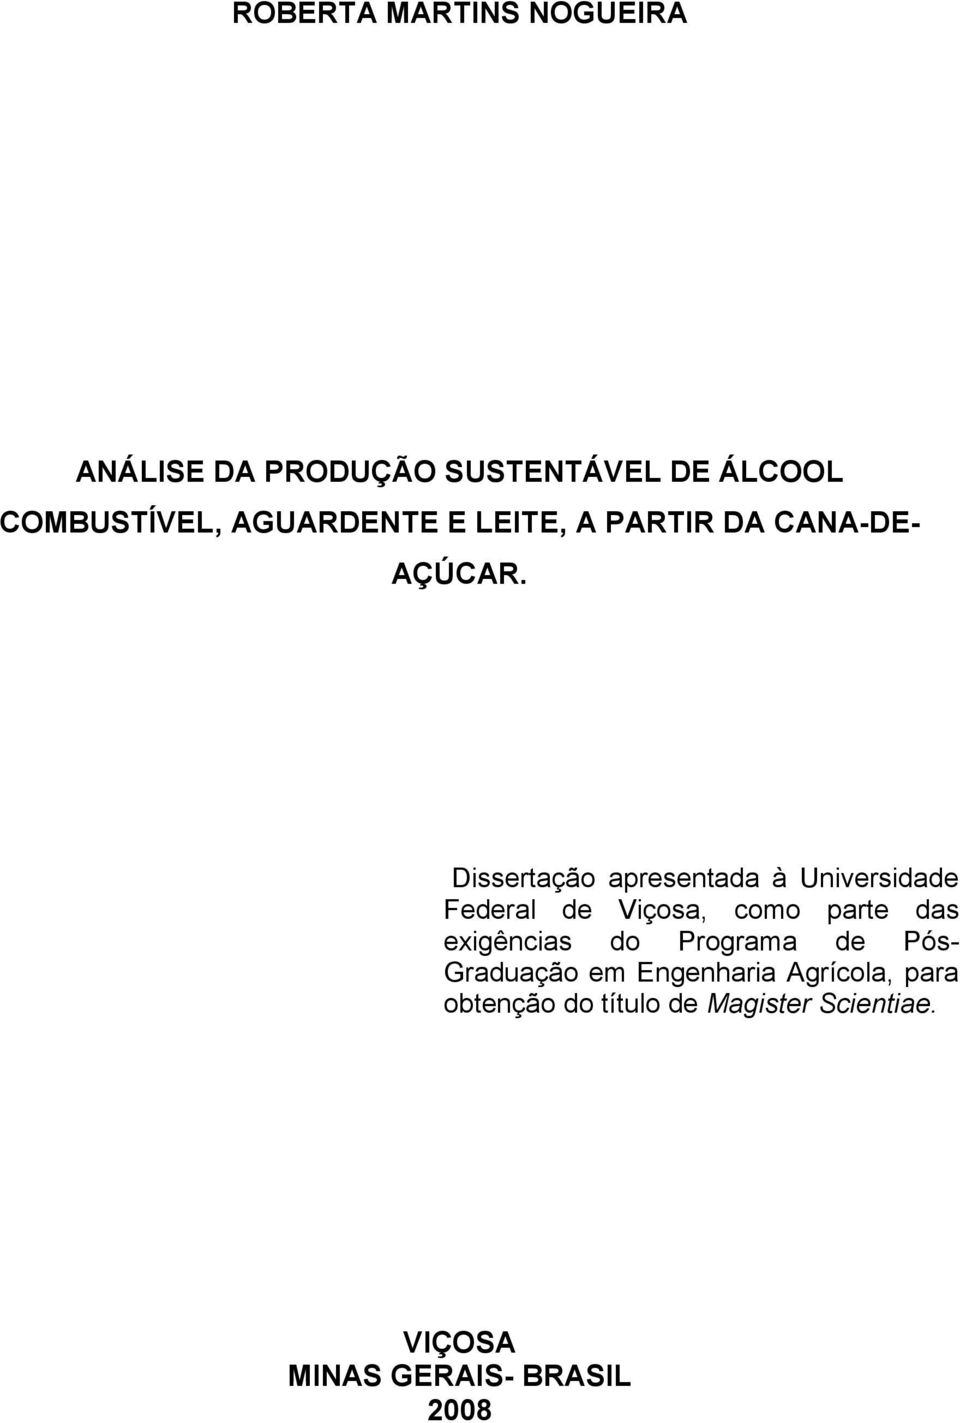 Dissertação apresentada à Universidade Federal de Viçosa, como parte das exigências do